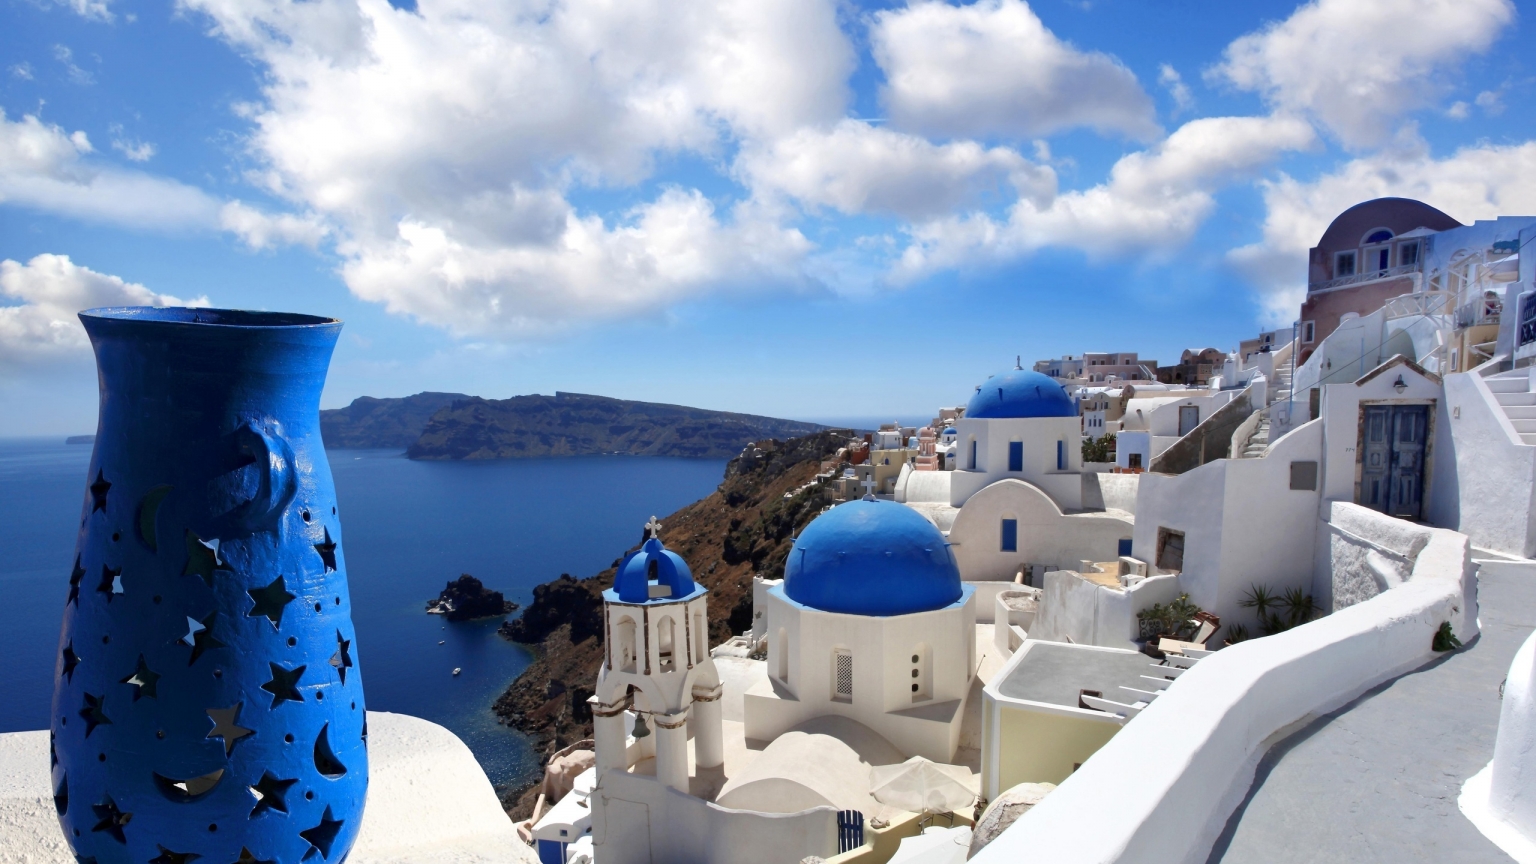 Blue Santorini Greece for 1536 x 864 HDTV resolution